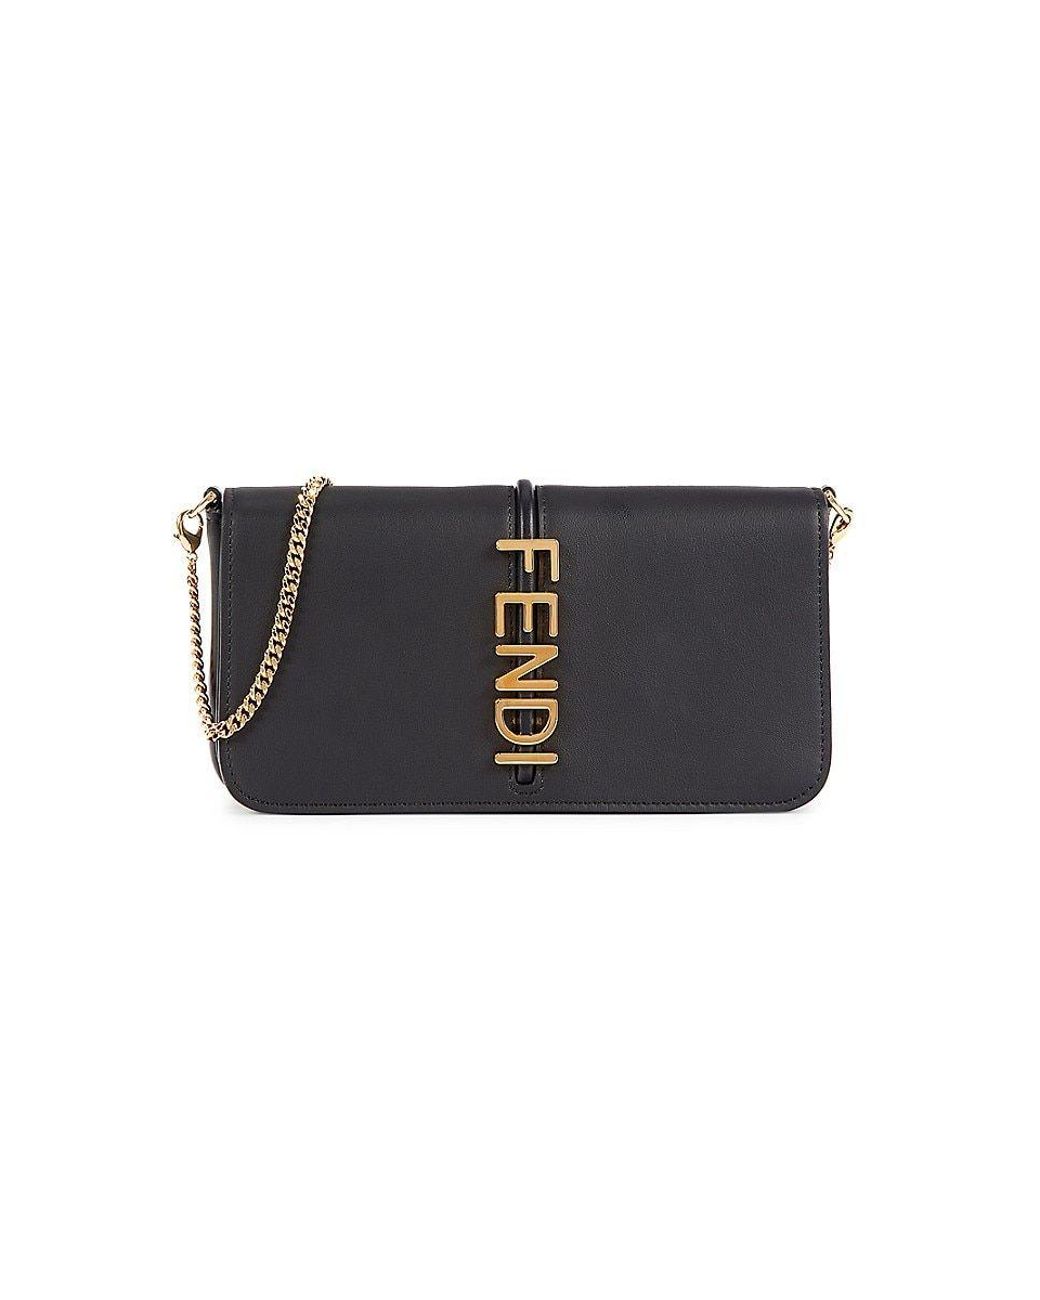 Fendi Leather & Chain Crossbody Bag in Black | Lyst